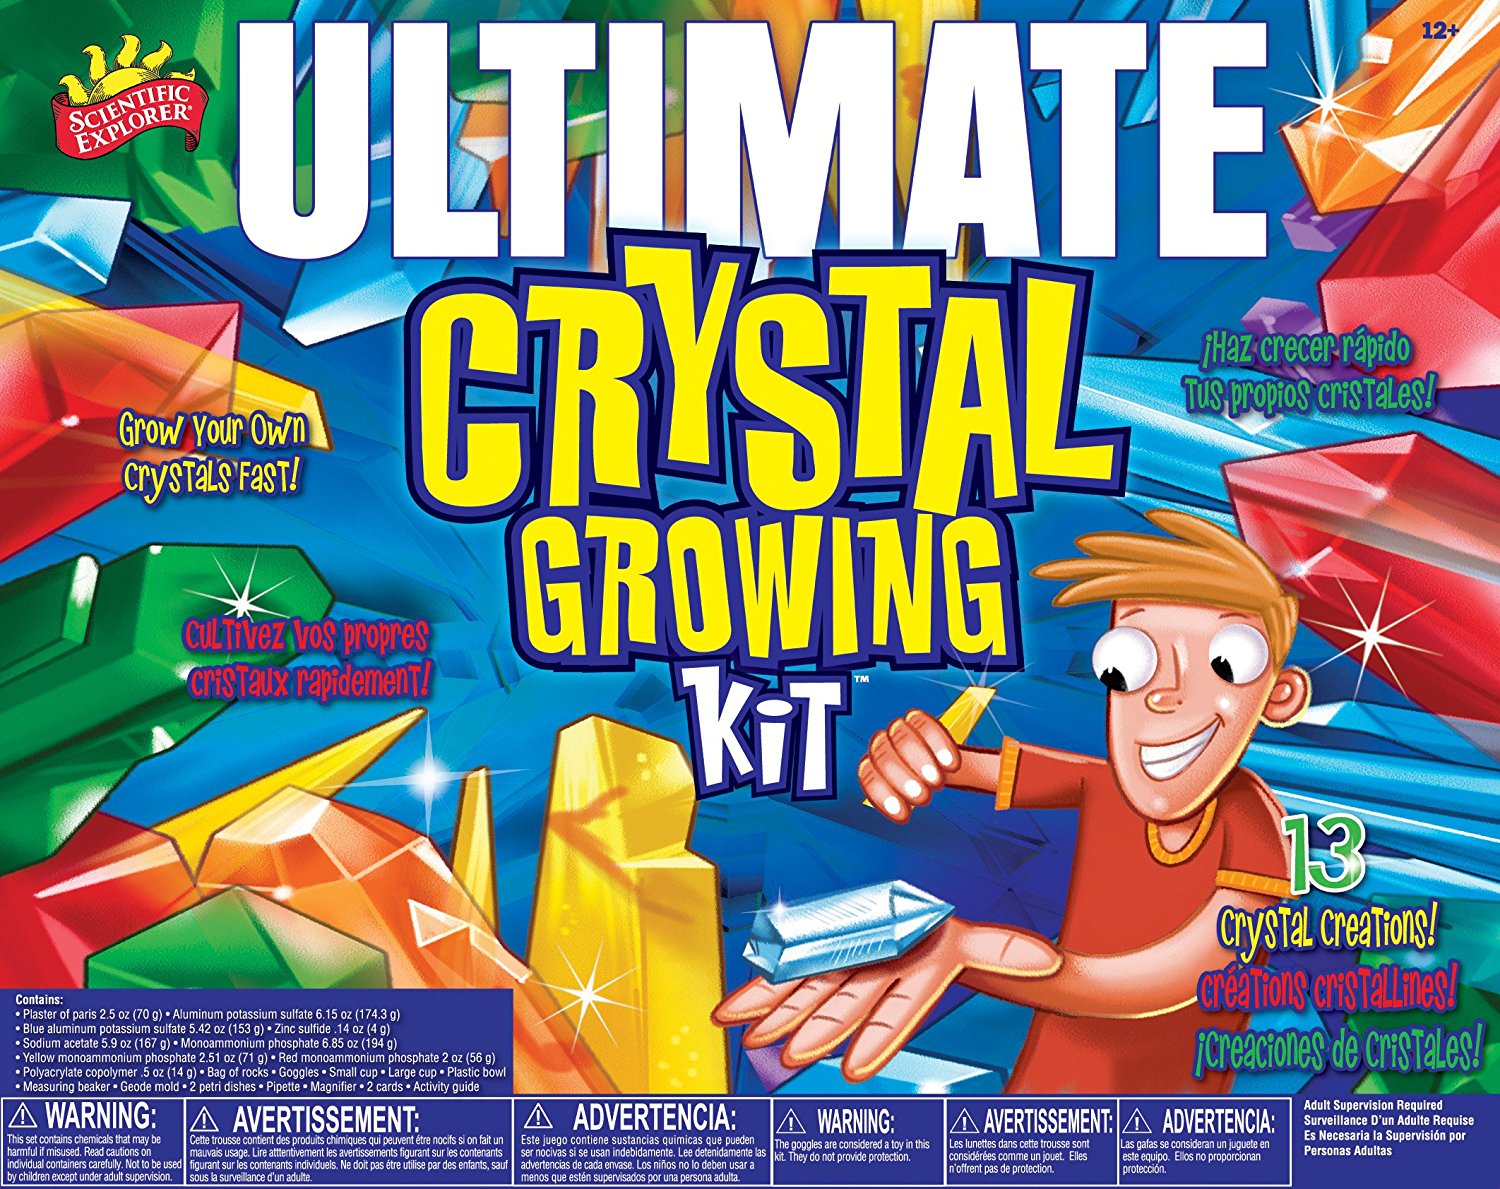 Scientific Explorer Ultimate Crystal Growing Kit – Just $8.54!